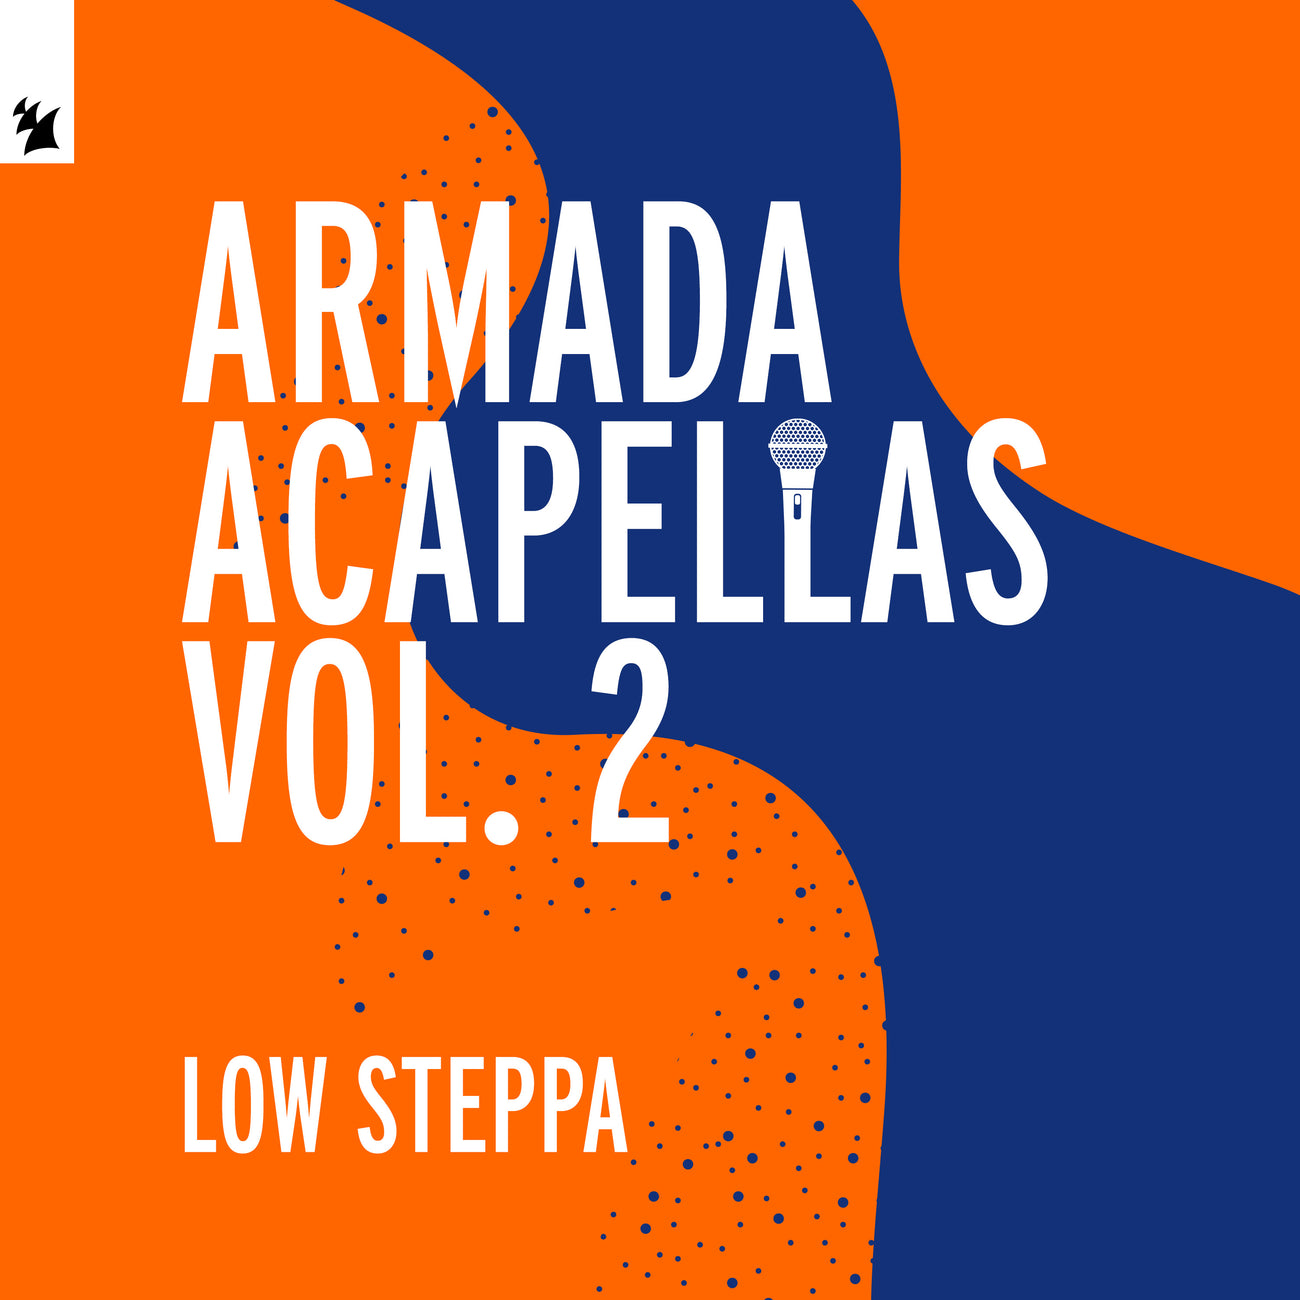 Armada Acapellas Vol. 2 - Low Steppa